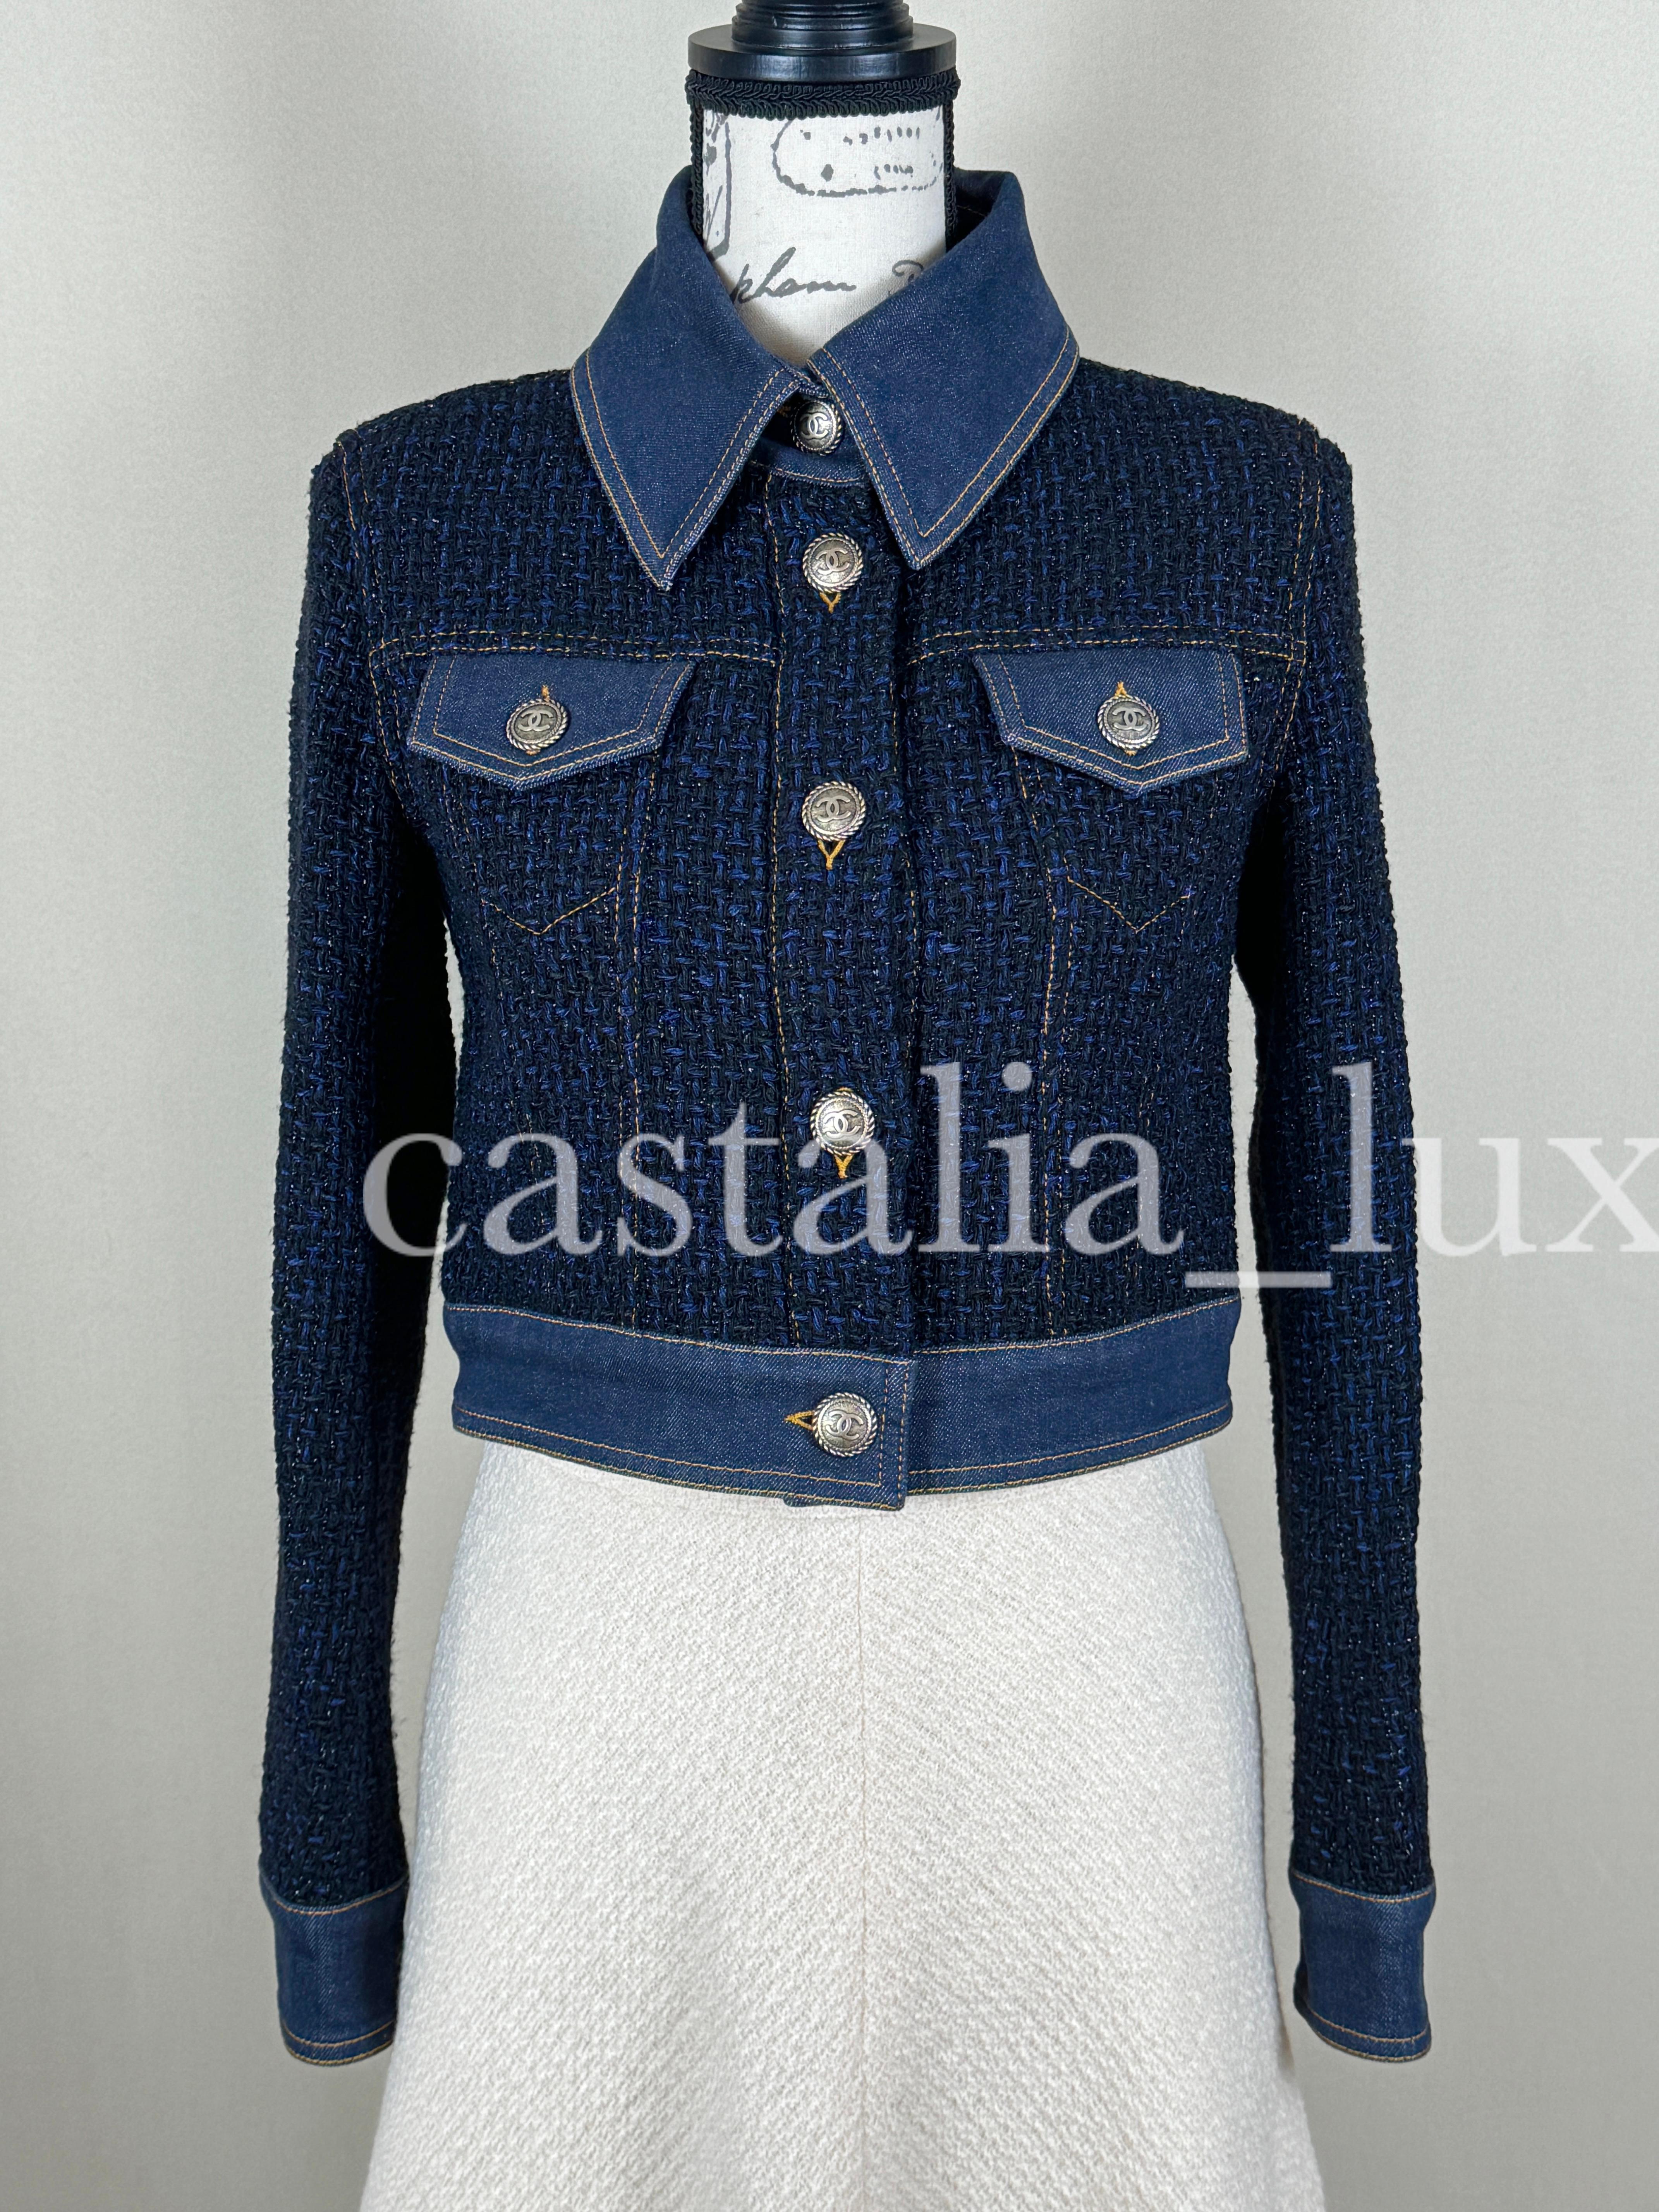 Chanel New Bestseller Lesage Tweed Jacket For Sale 3